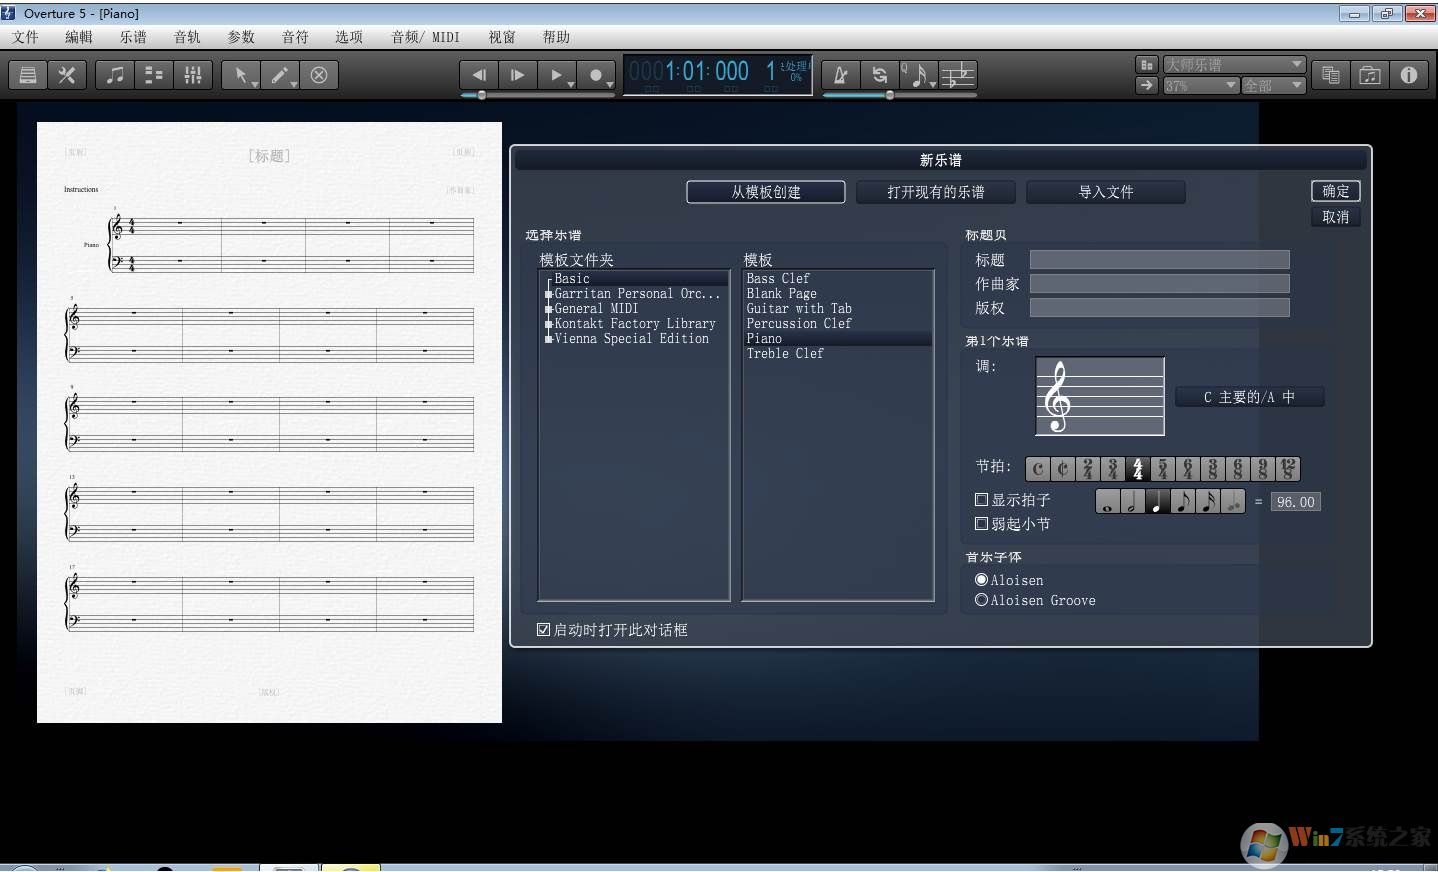 钢琴打谱软件Overture 5.51官方中文版专业